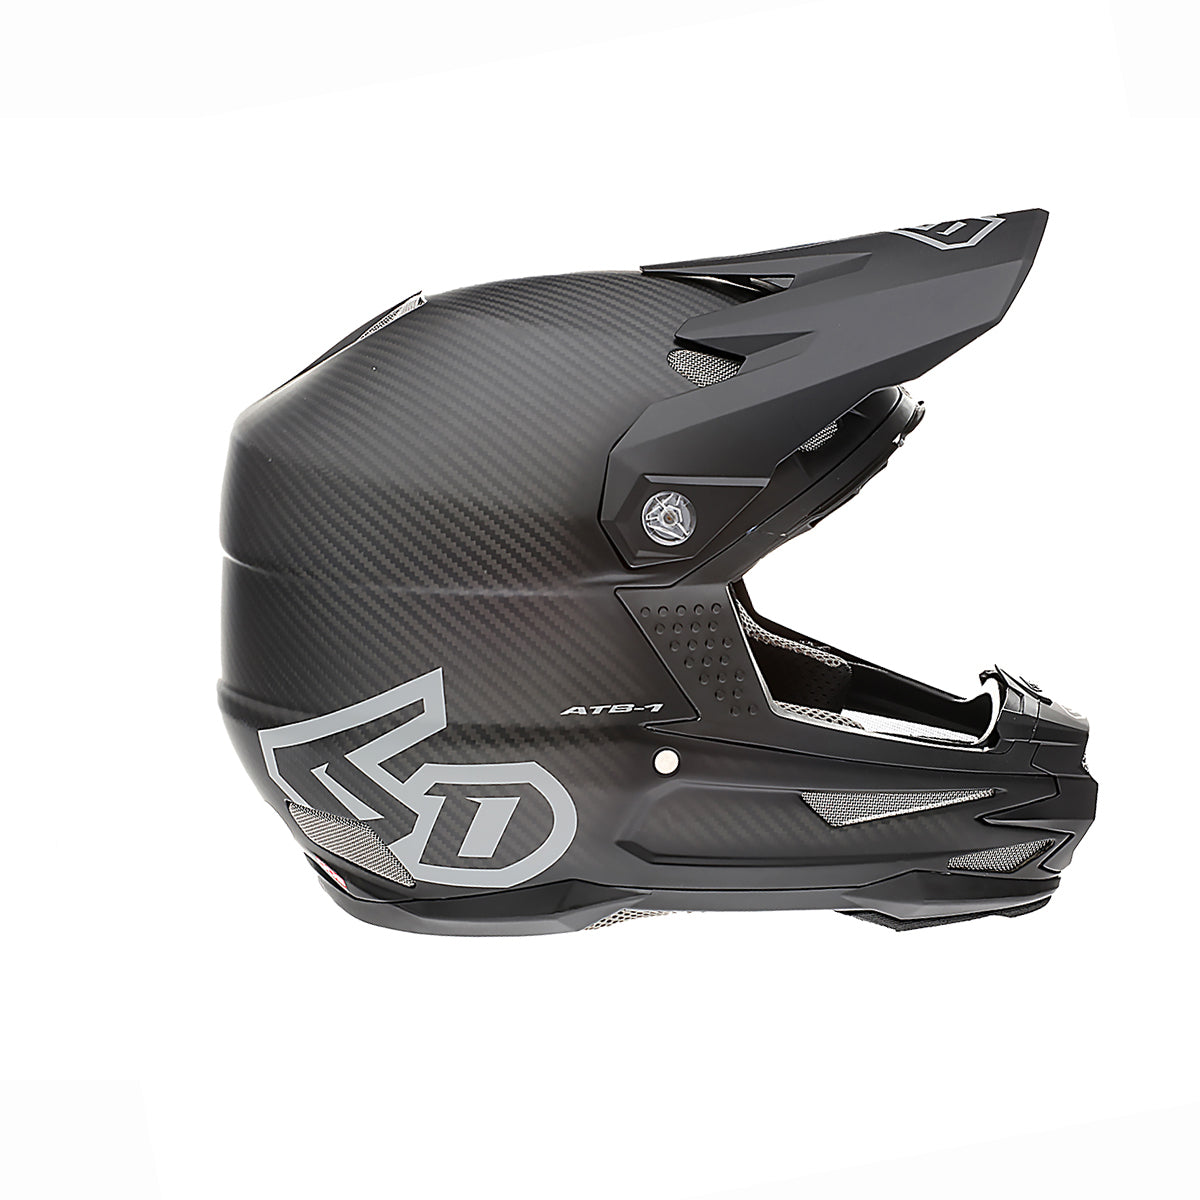 6D ATB-1 BMX/DH Helmet - Solid Matt Carbon